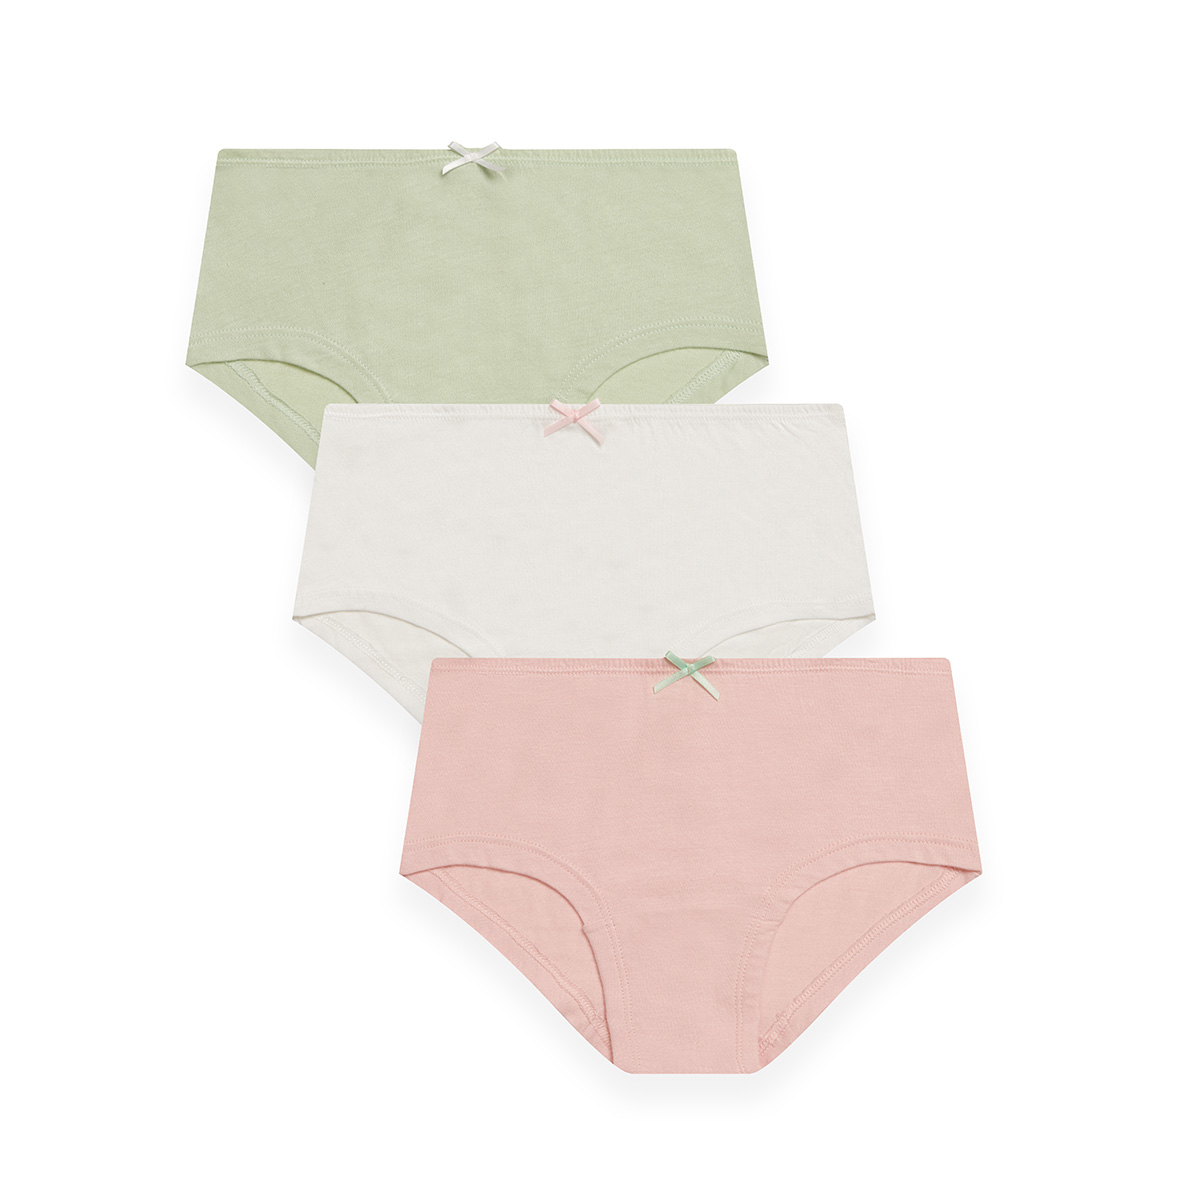 Greentreat ladies underwear 3 pack brief